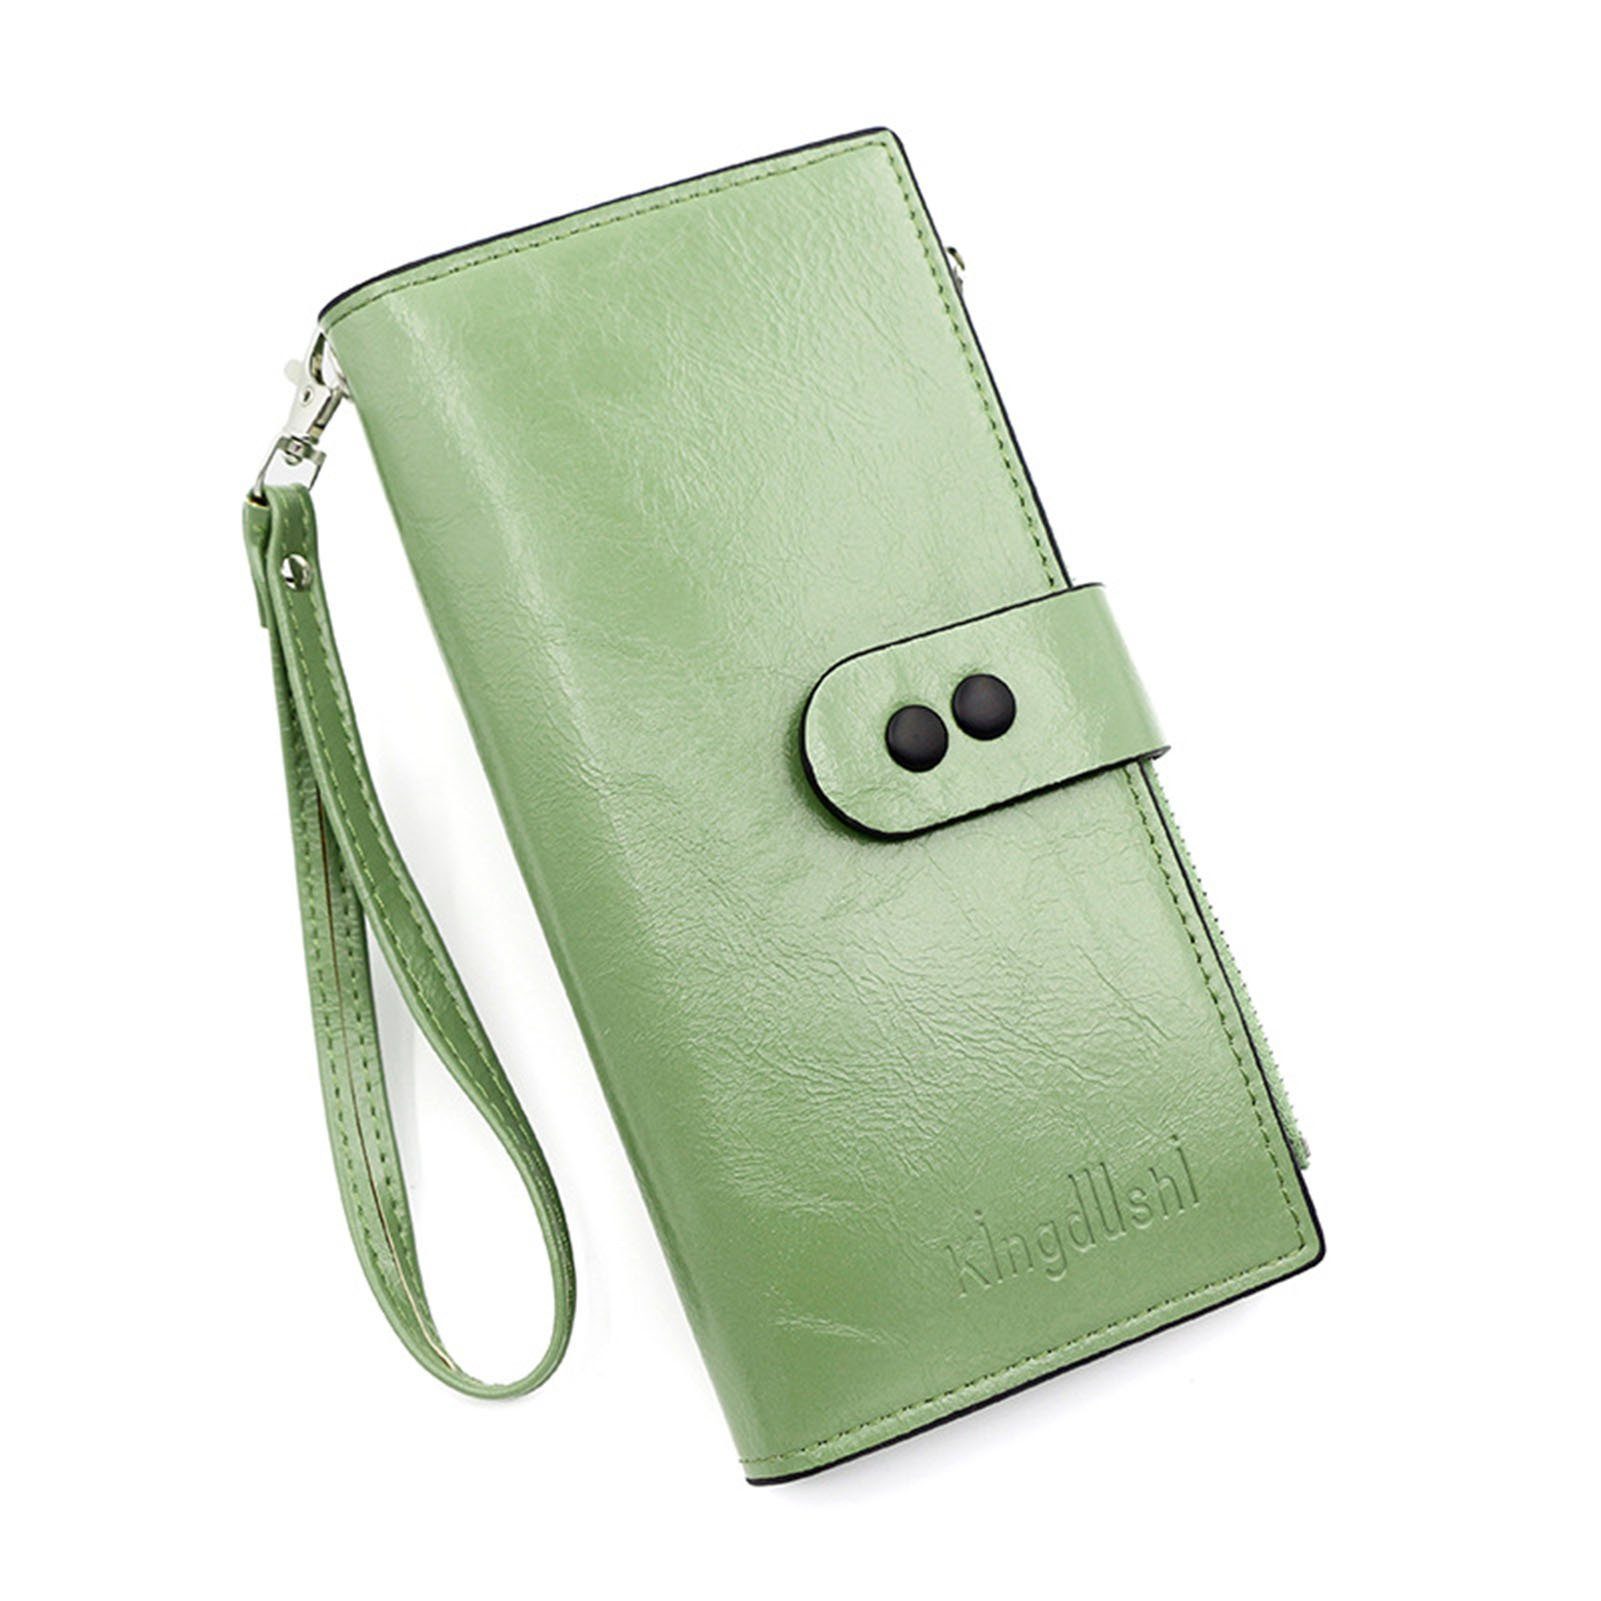 Blusmart Geldbörse Damen-Clutch In Reiner Farbe, Lange Clutch, Geldbörse, Handtasche, Unterarmtasche r8243 green